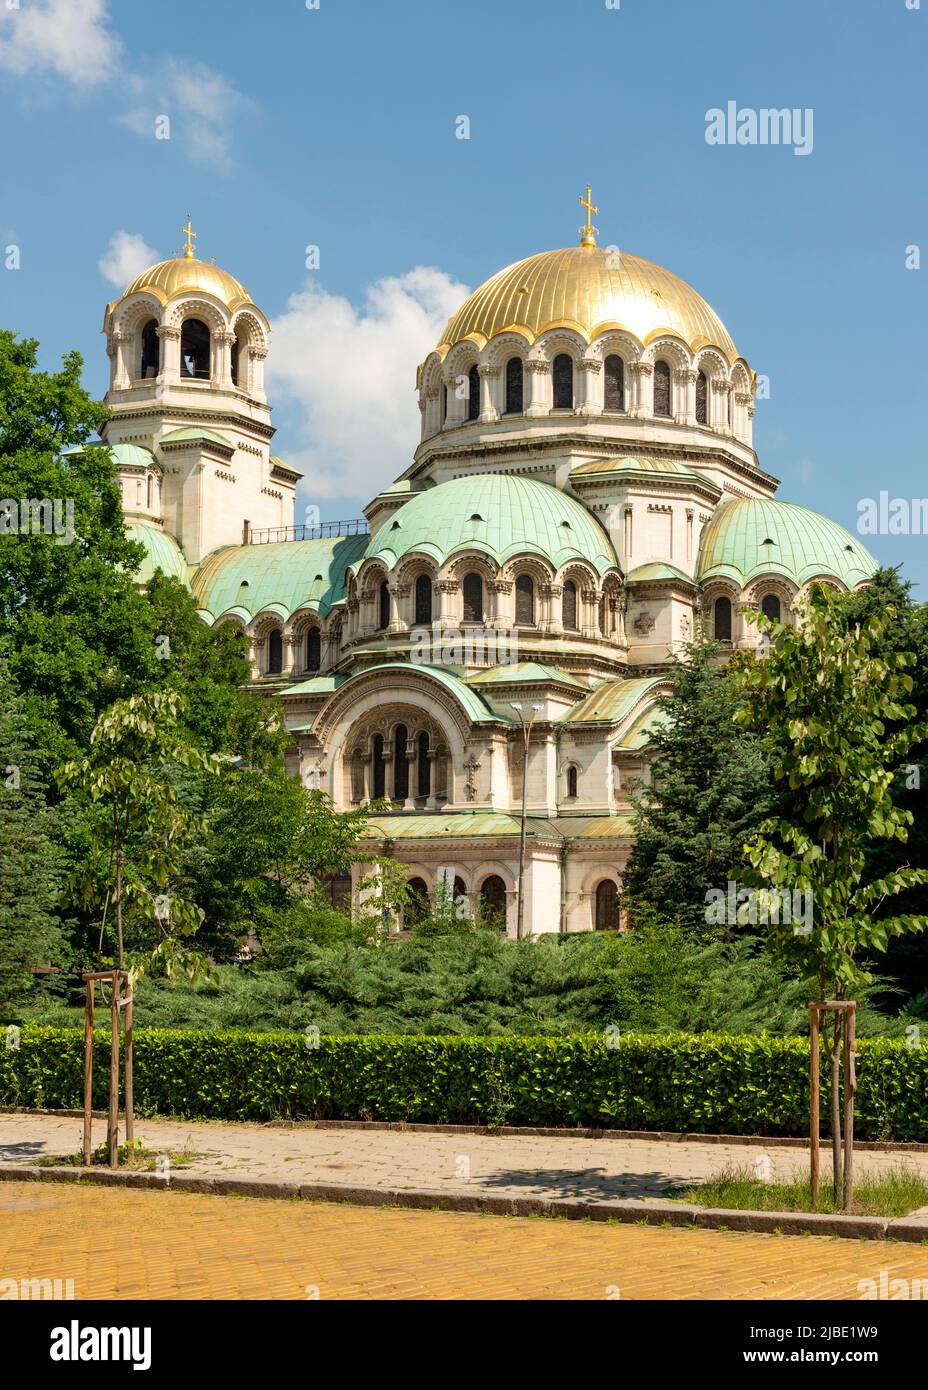 Cupole dorate dettaglio architettonico della Cattedrale Ortodossa di San Alessandro Nevsky a Sofia, Bulgaria, Balcani, Europa Foto Stock